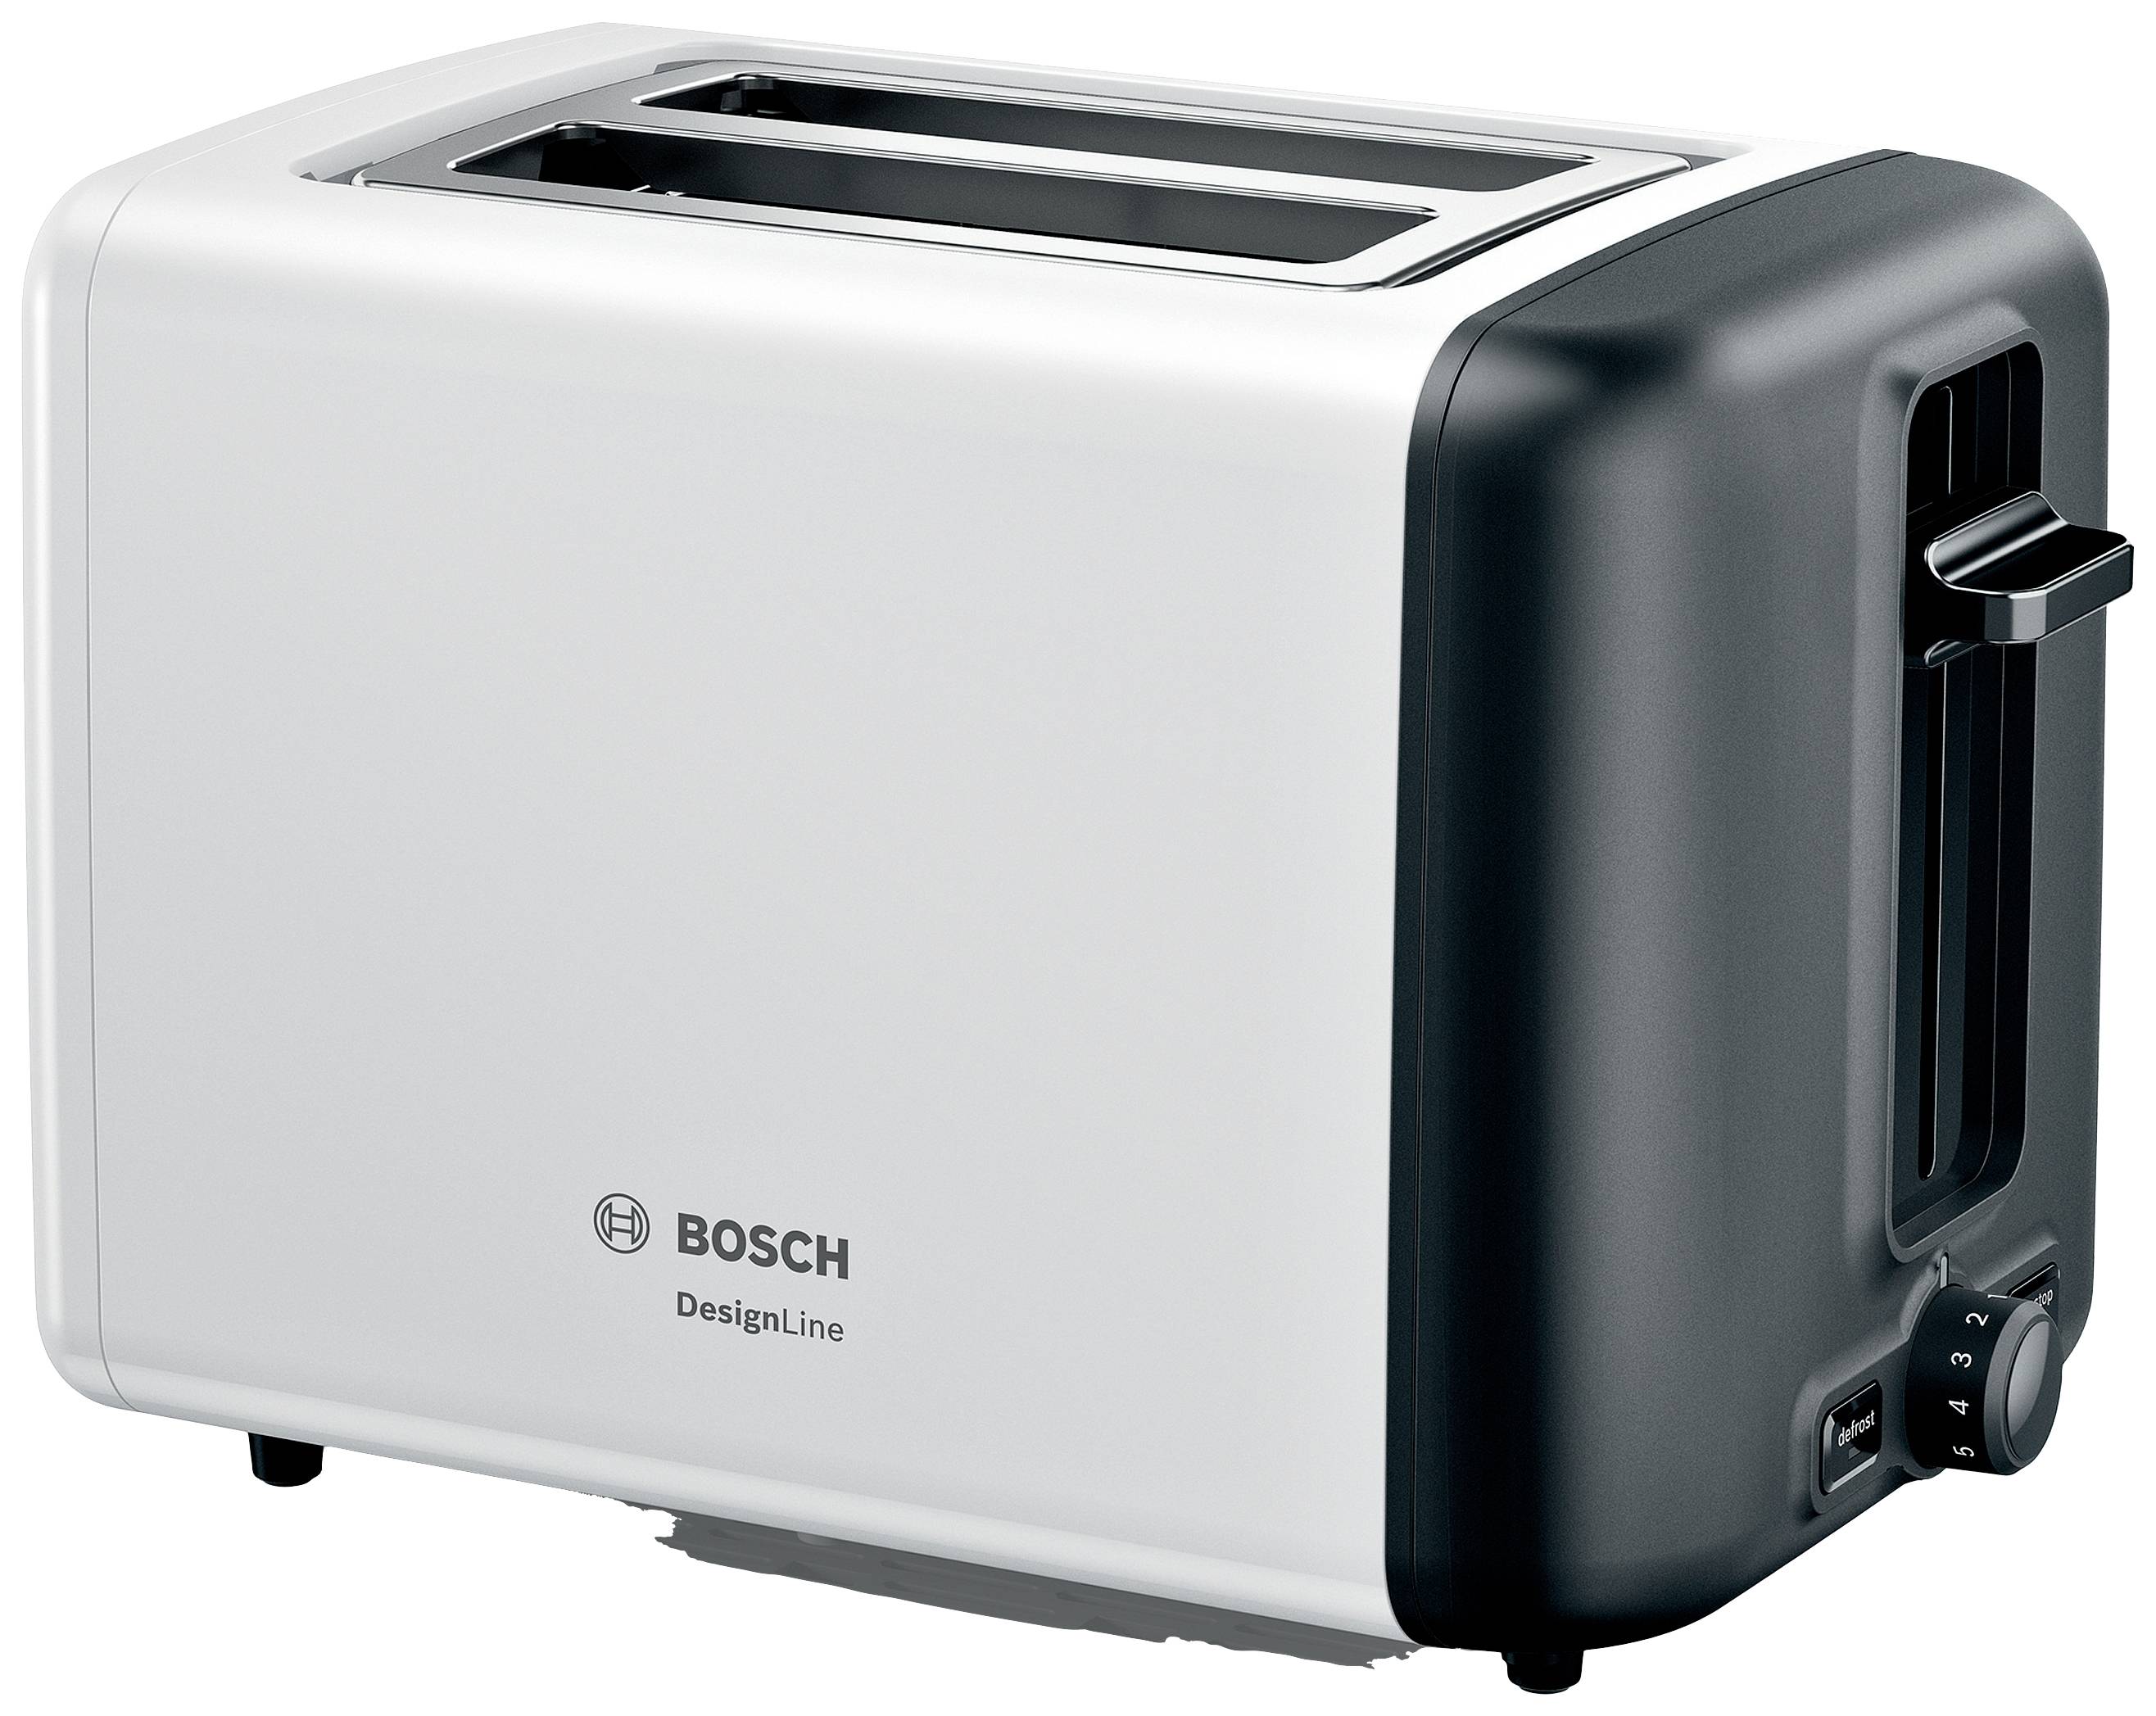 BOSCH Toaster Design Line